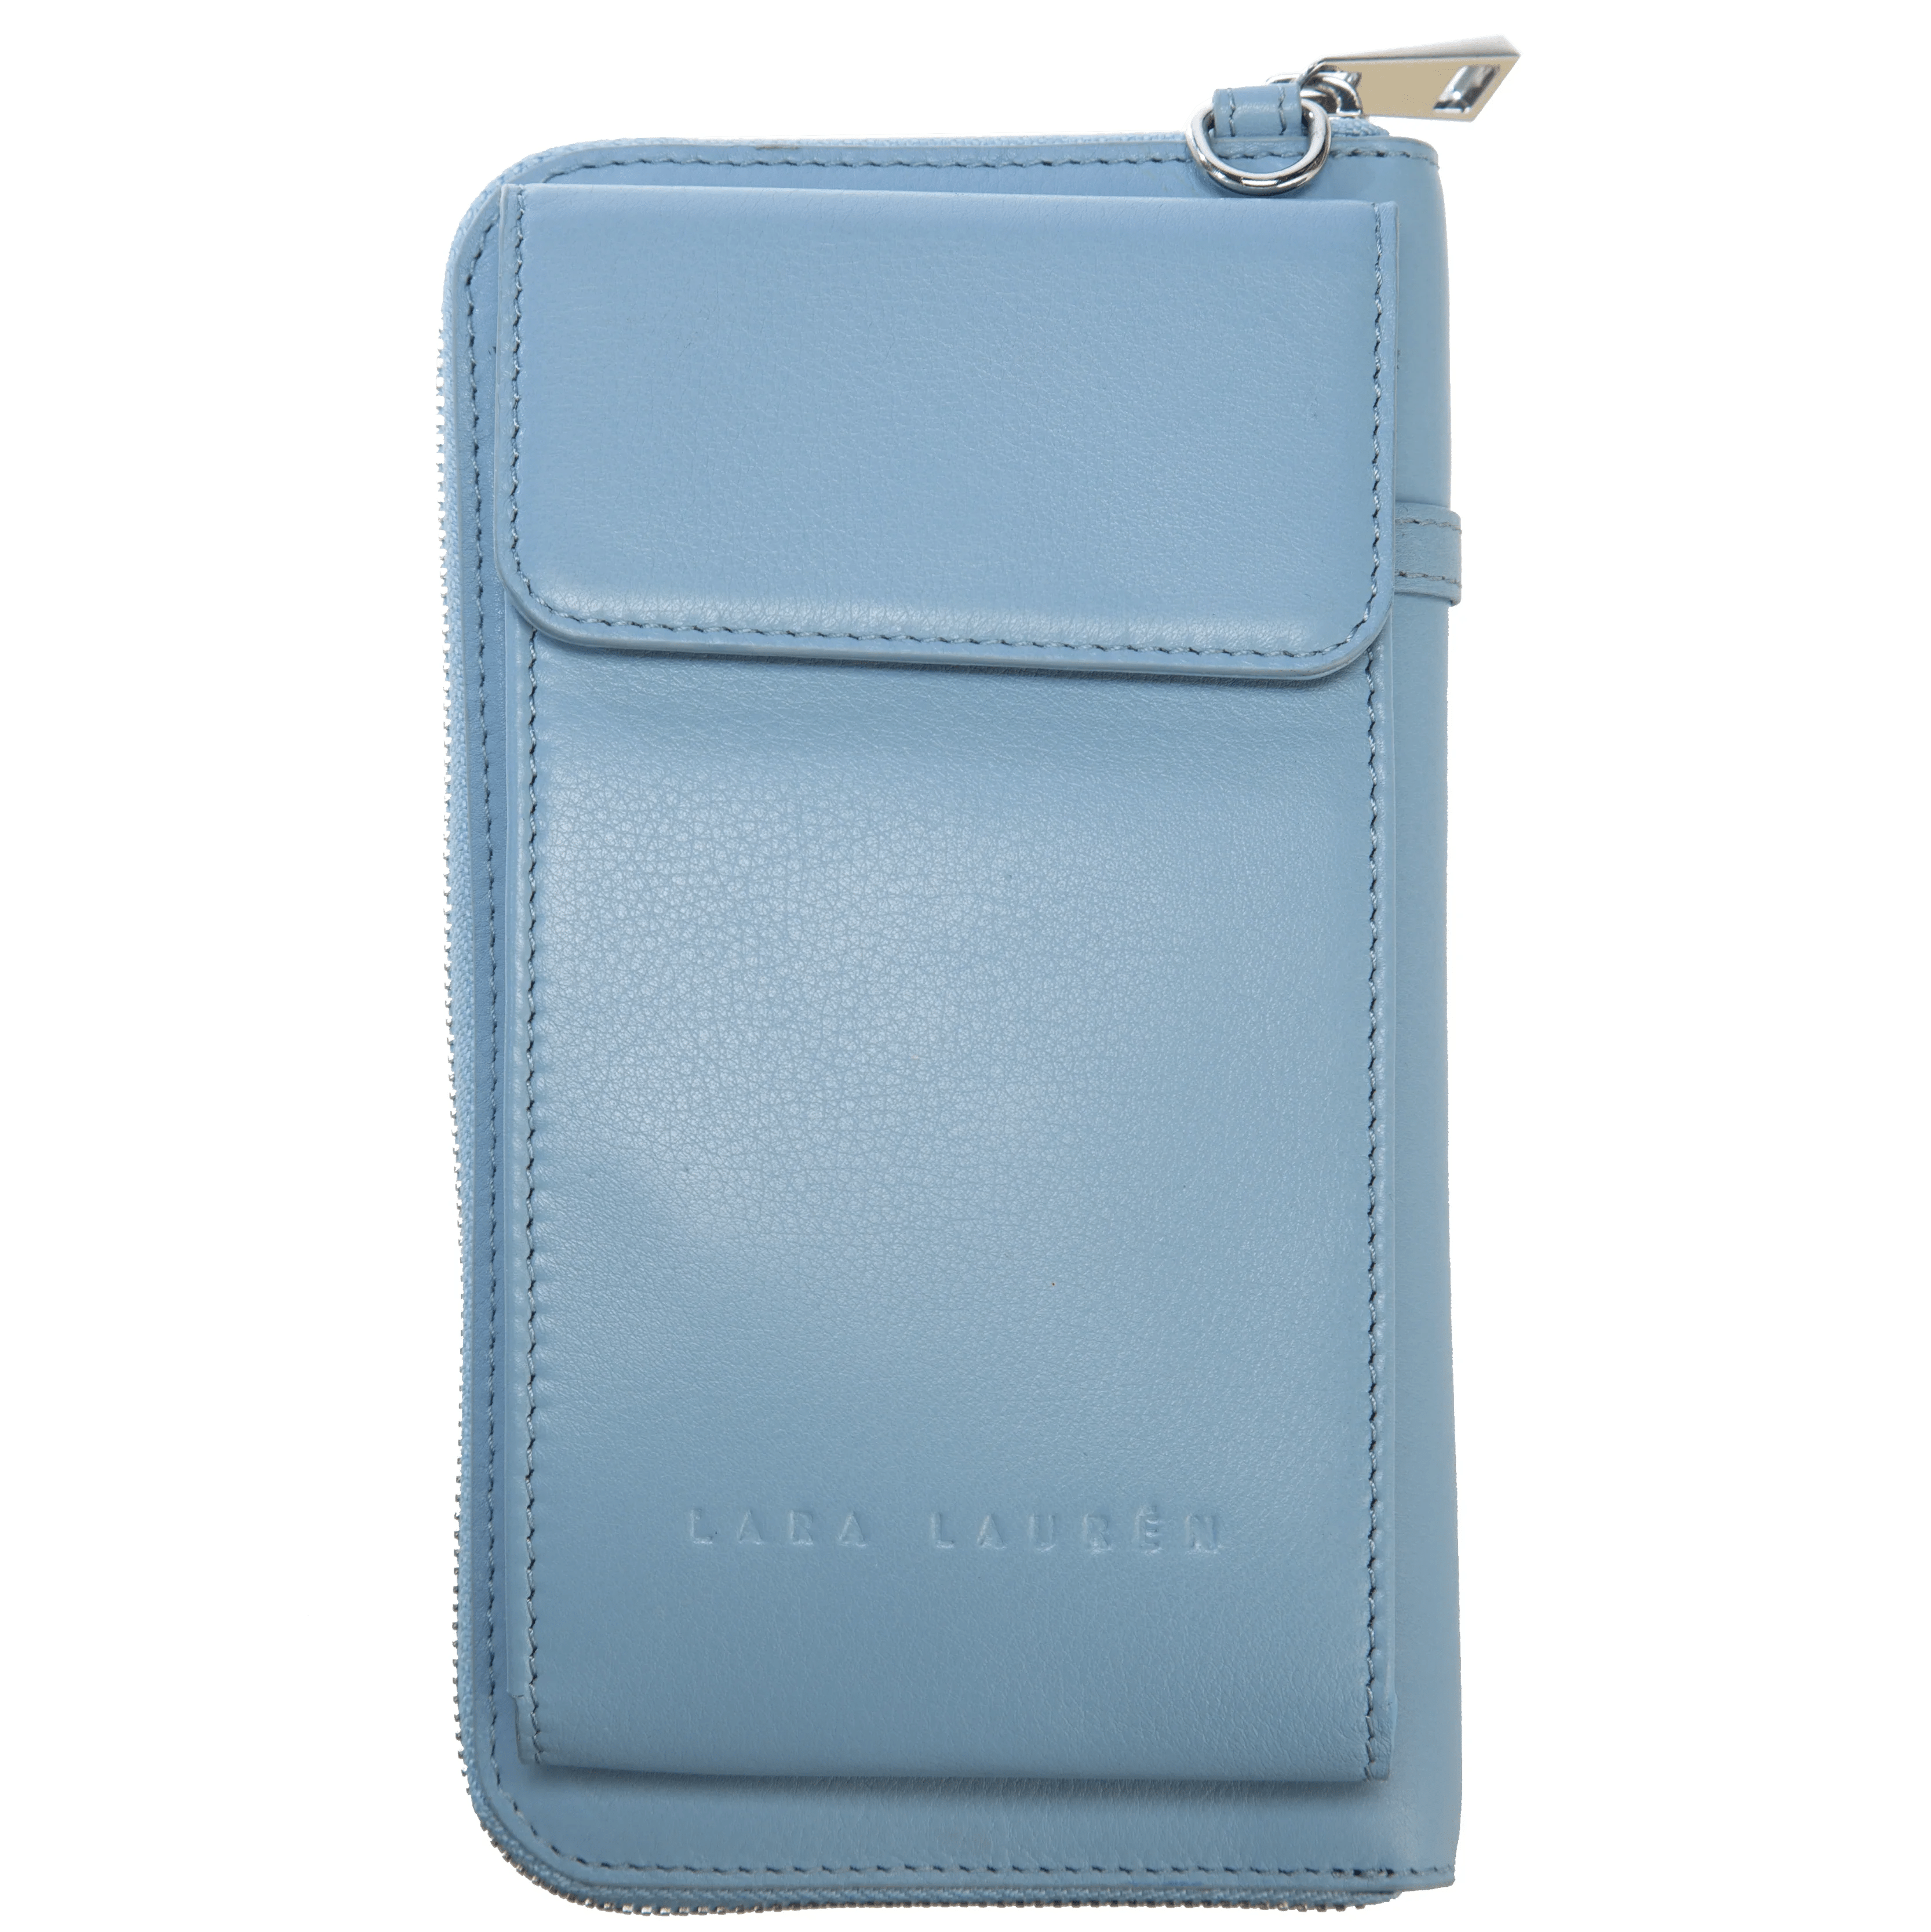 Lara Laurén City Wallet A Mobile Bag 20 cm - blue